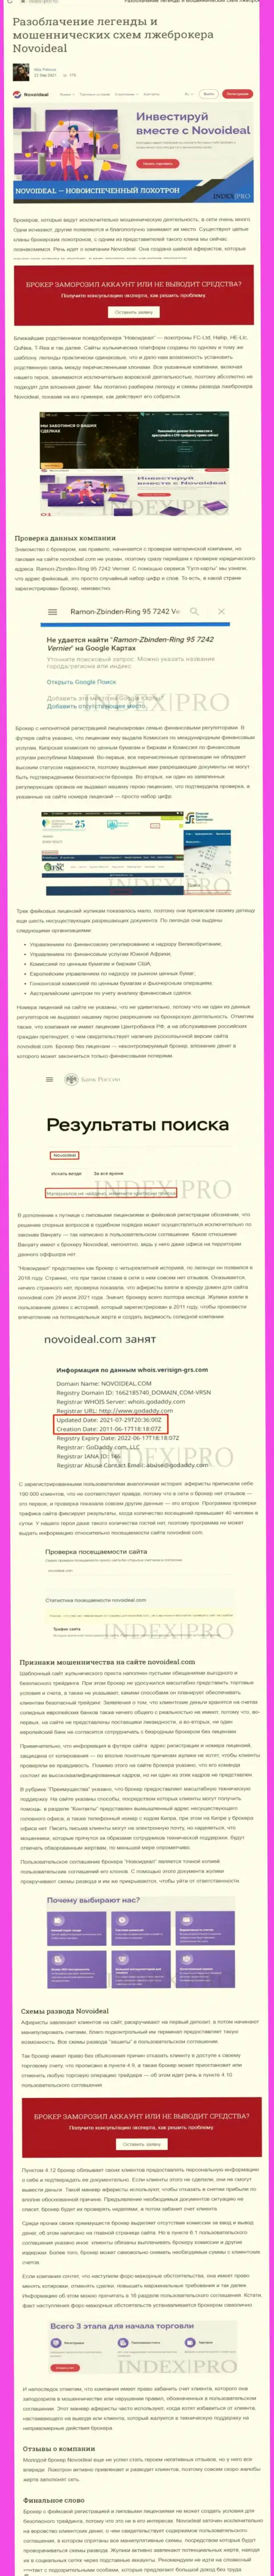 NovoIdeal - это МОШЕННИКИ !!! обзорная статья со свидетельством неправомерных уловок